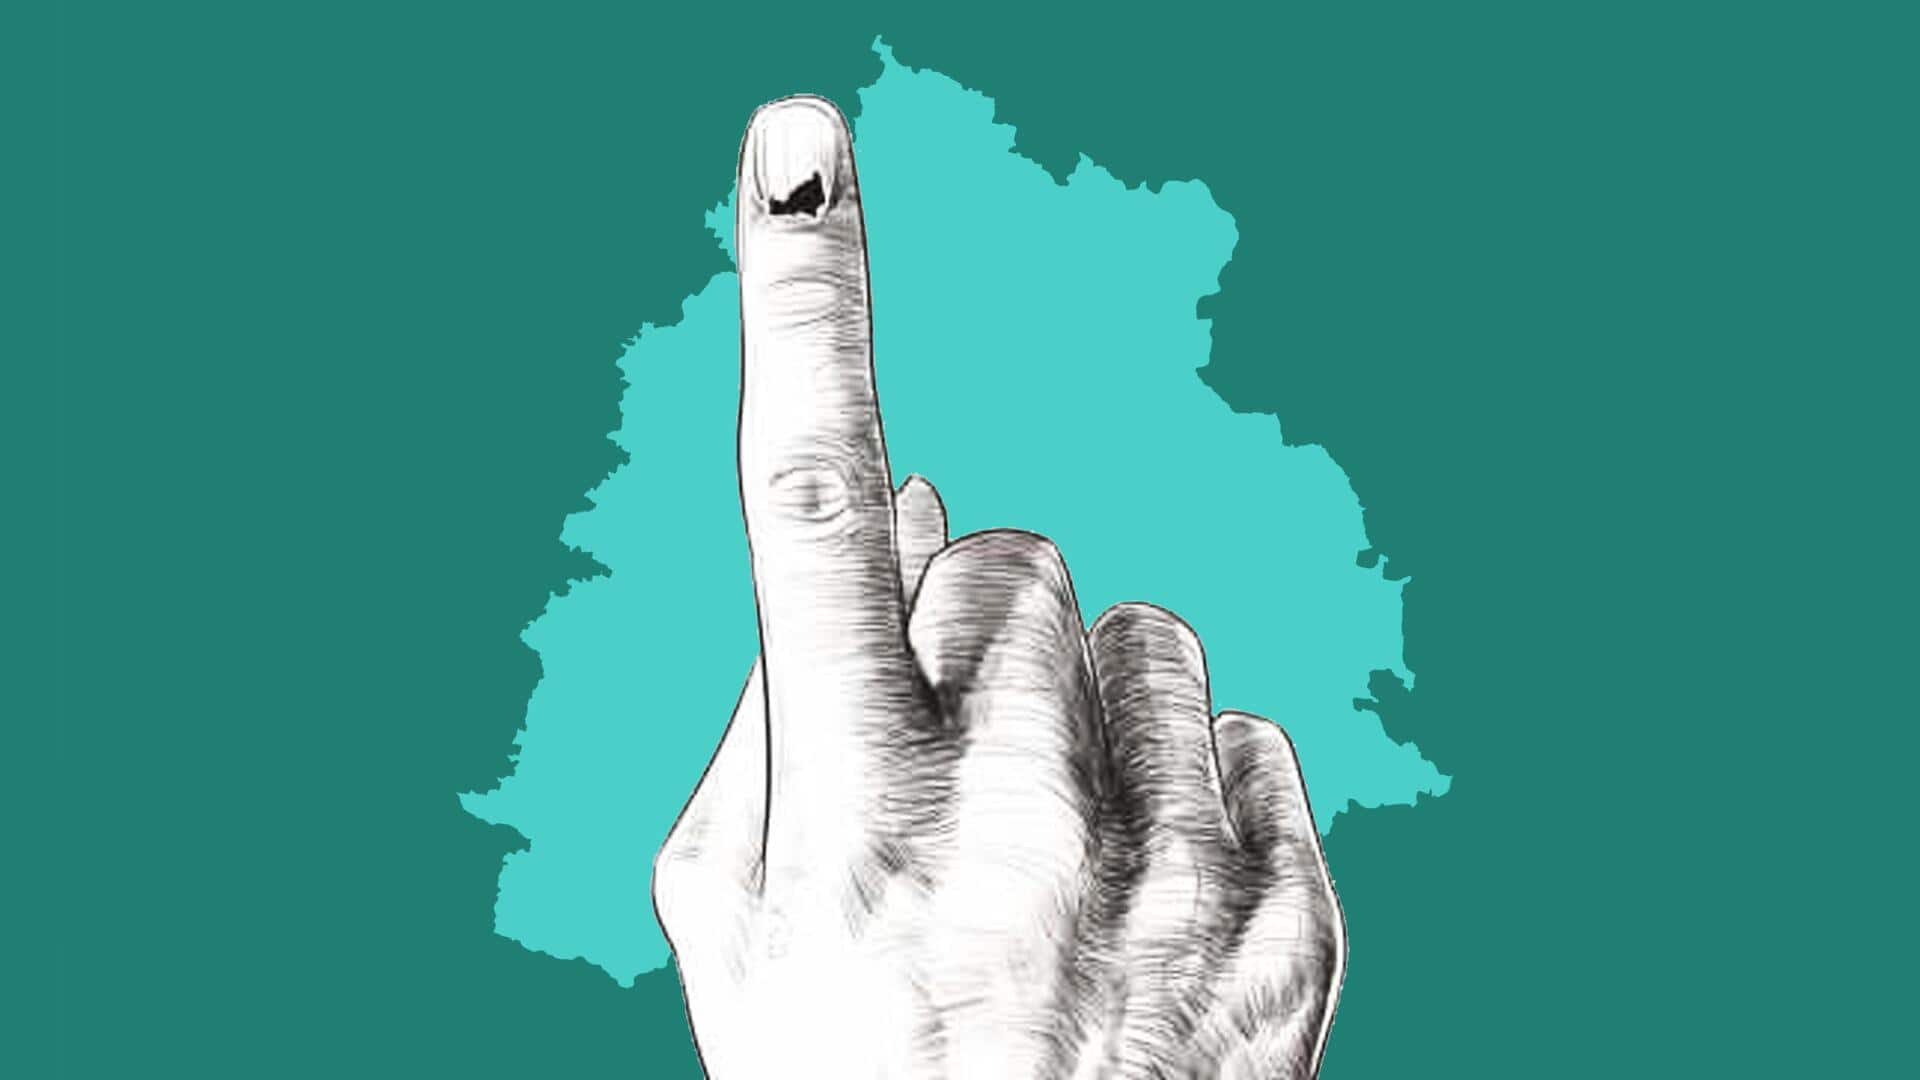 तेलंगाना विधानसभा चुनाव के लिए मतदान शुरू, जानिए जरूरी बातें 